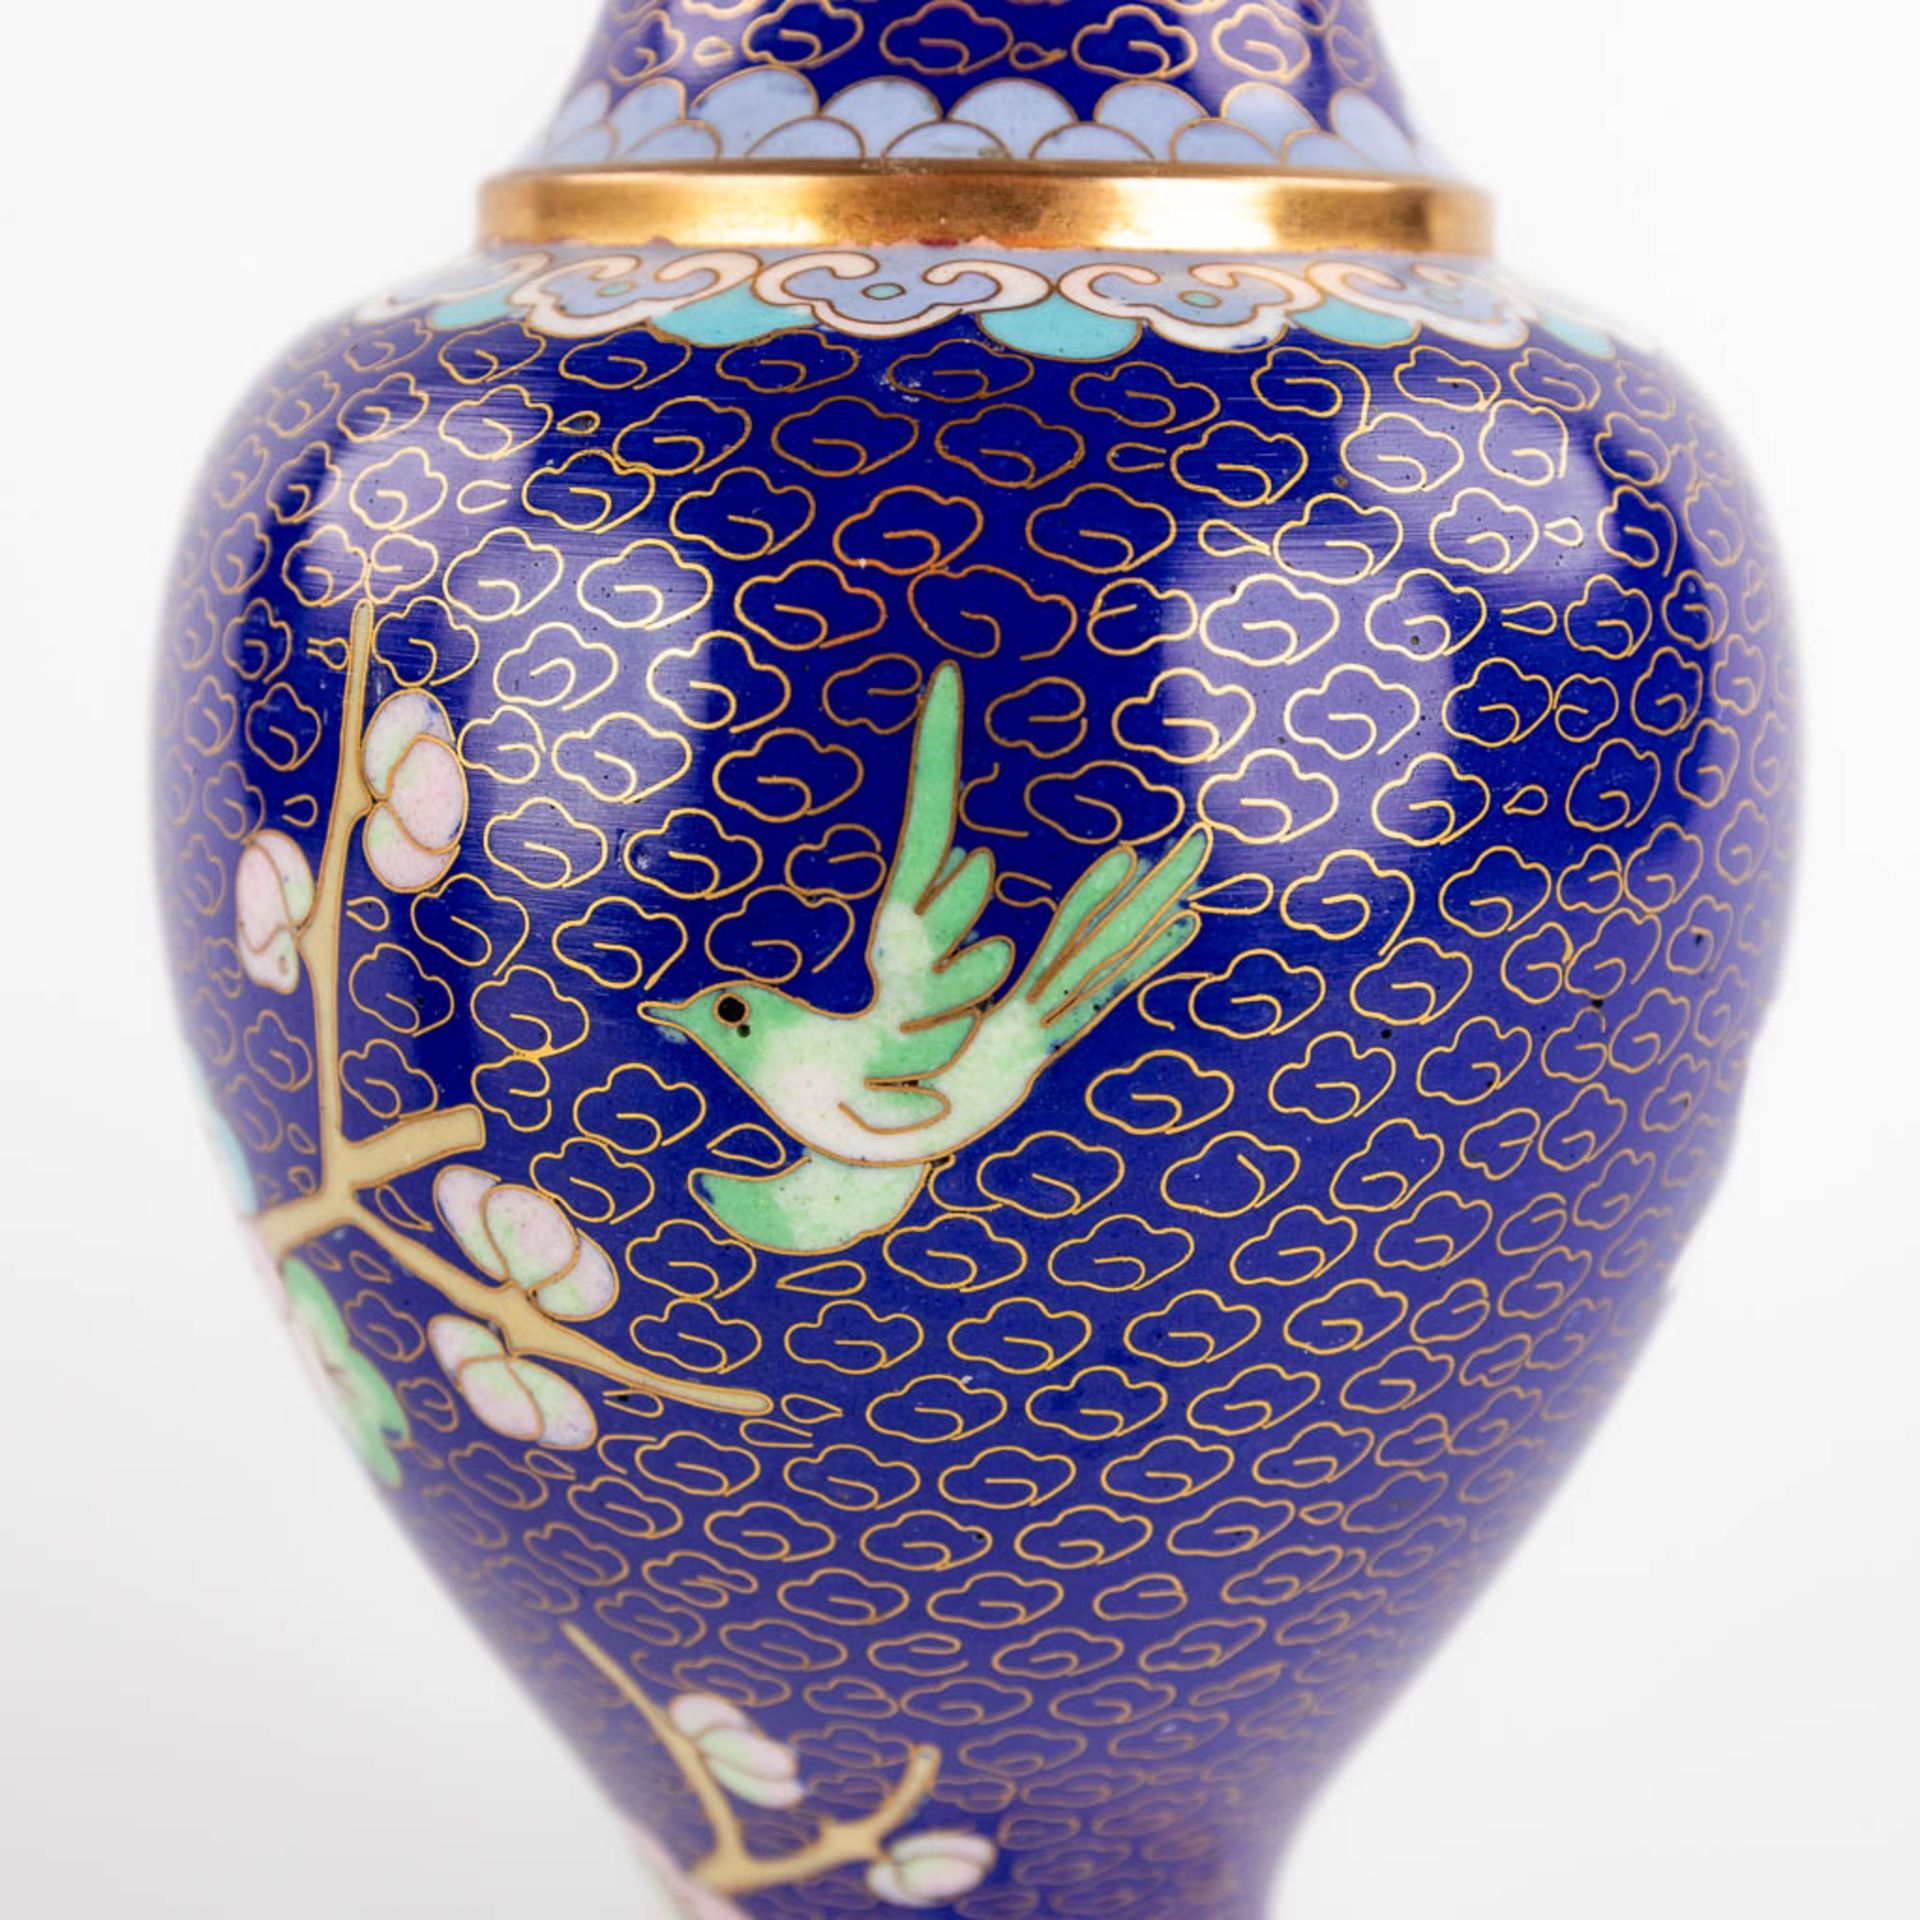 Five Oriental vases, cloisonné bronze. 20th C. (H:25 cm) - Image 19 of 27